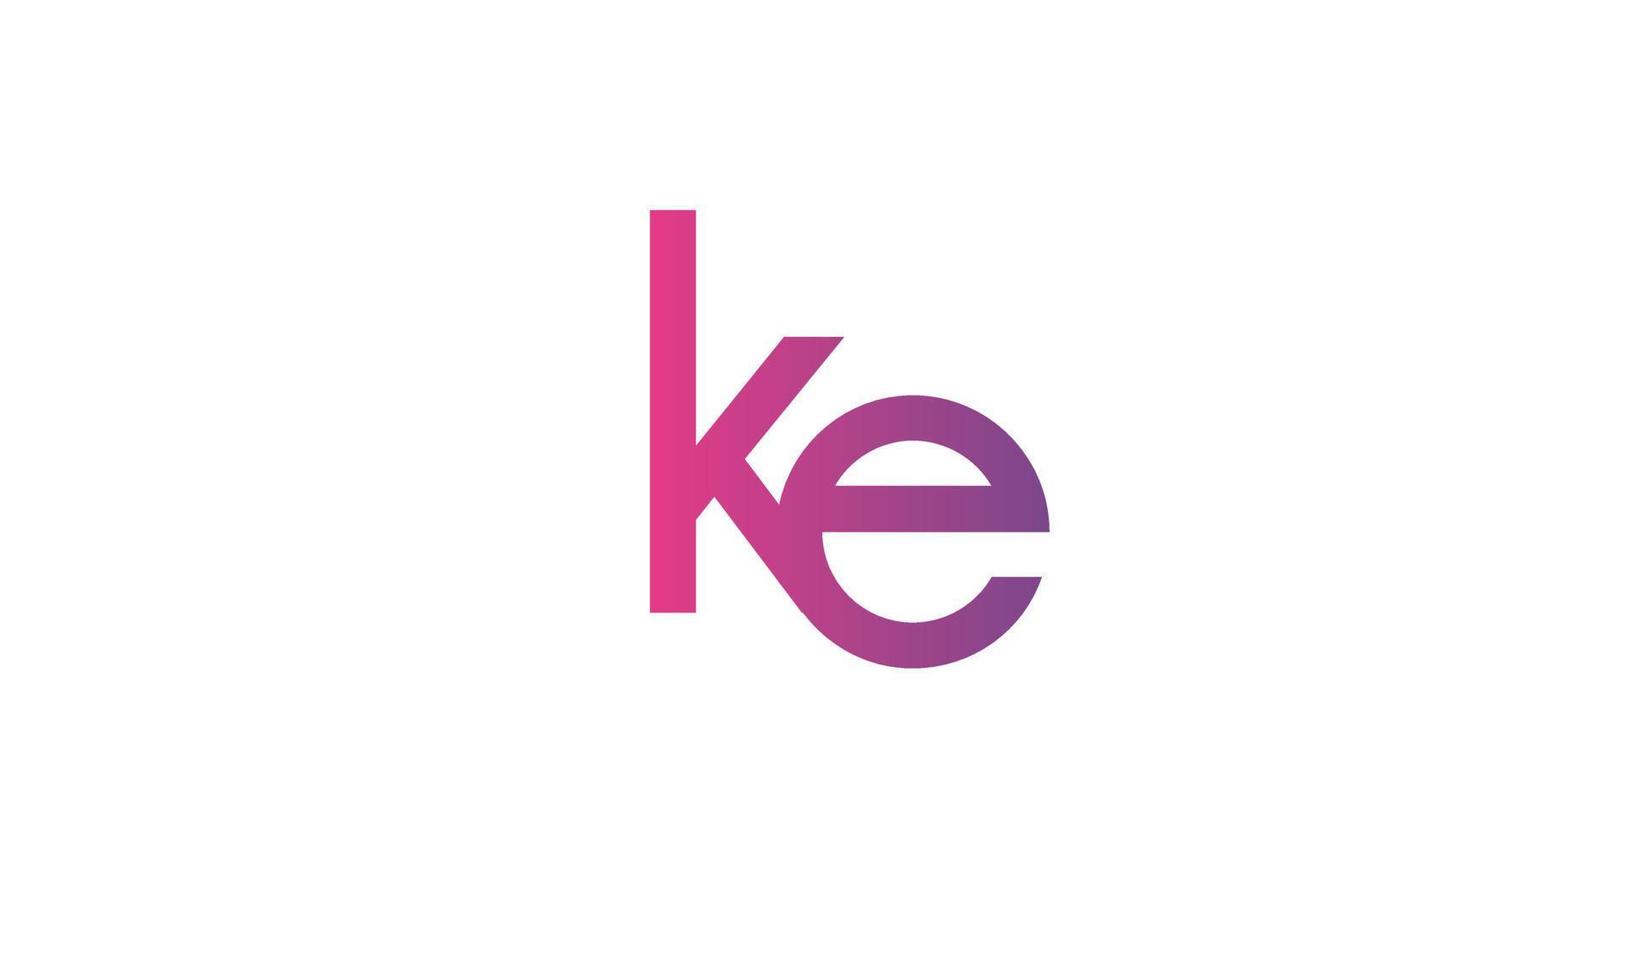 letras do alfabeto iniciais monograma logotipo ke, ek, ke e vetor